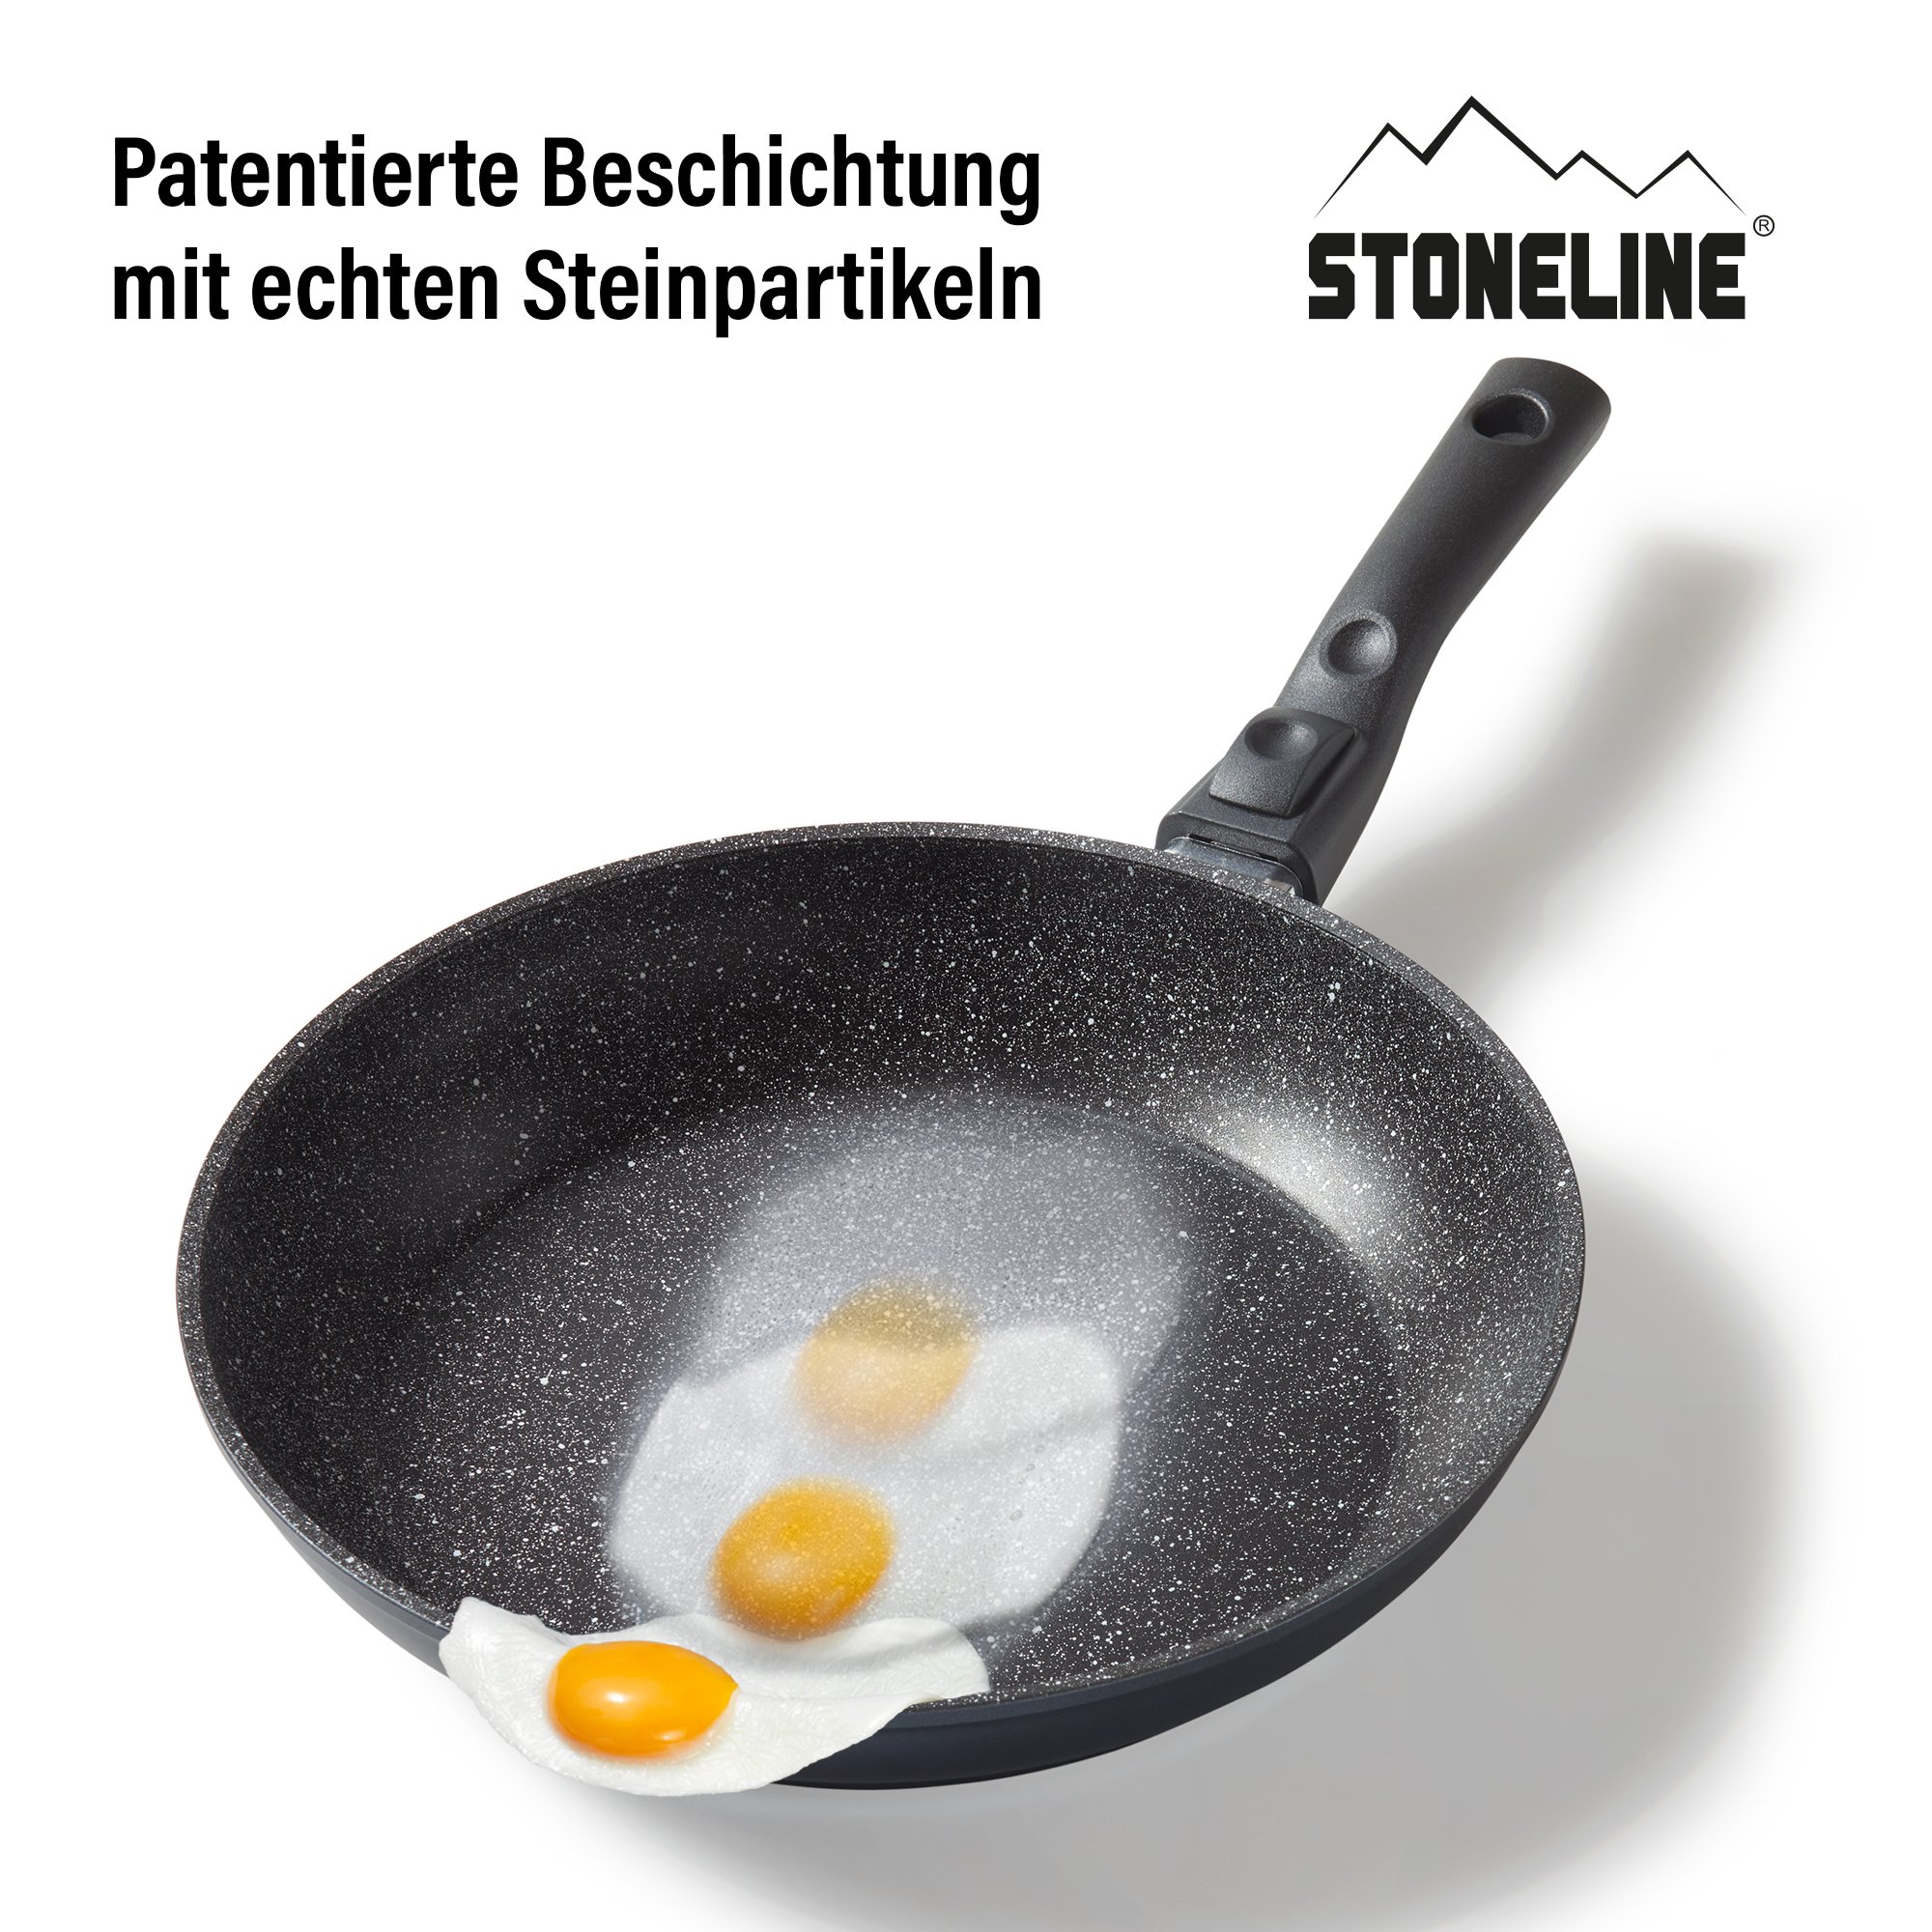 STONELINE® FLEX Schmorpfanne 28 cm, mit abnehmbarem Griff, mit Glasdeckel, Made in Germany, Induktion geeignet